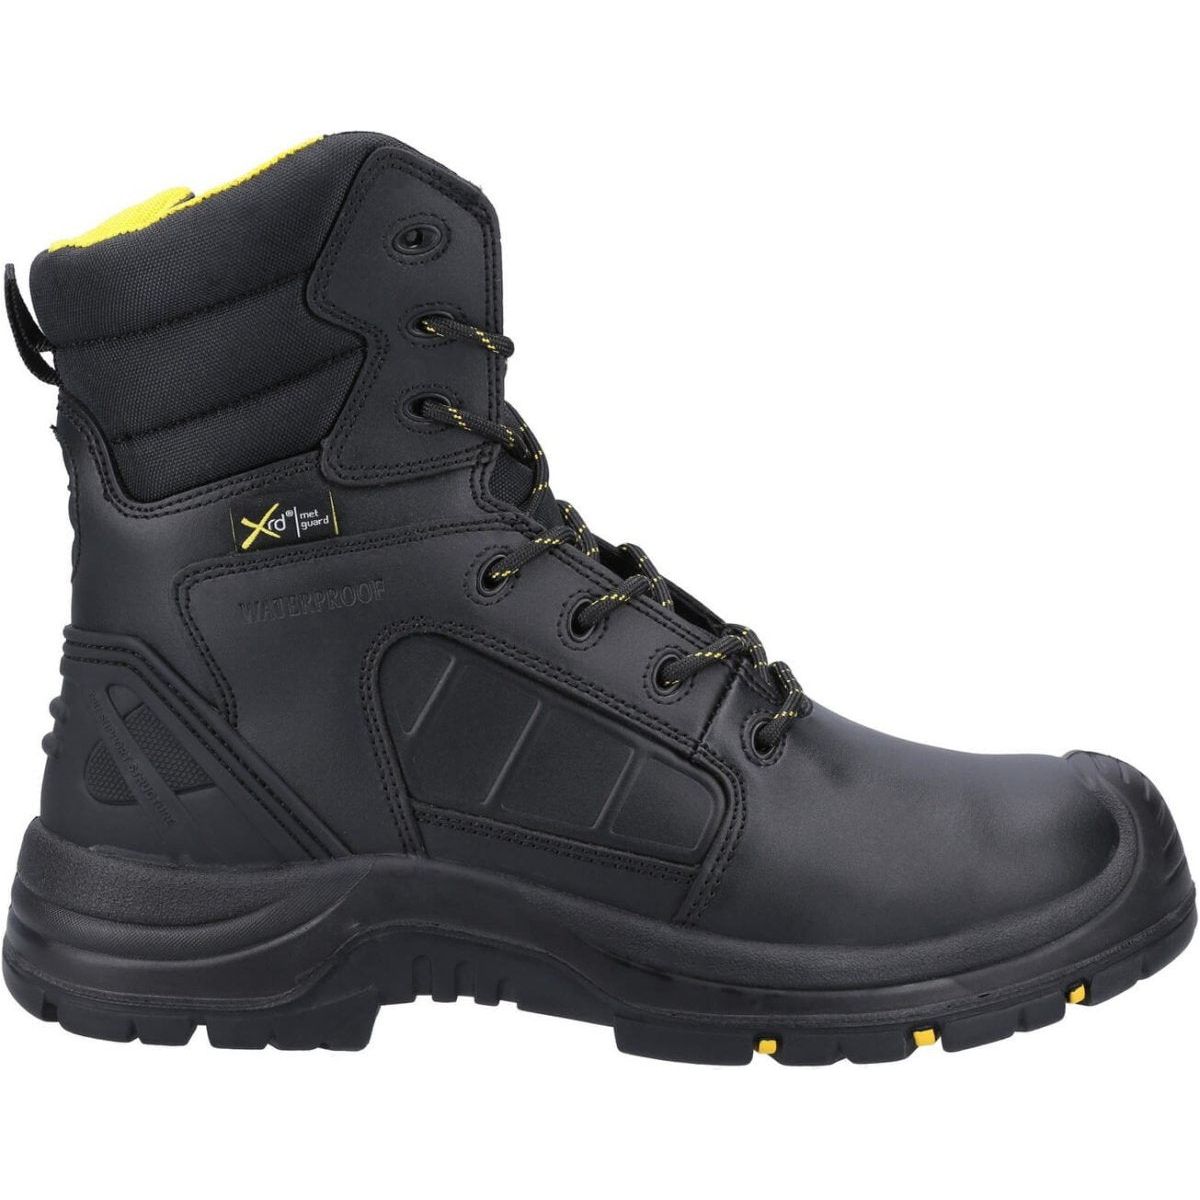 Amblers As350C Berwyn Waterproof Metal-Free Safety Boots Mens - workweargurus.com